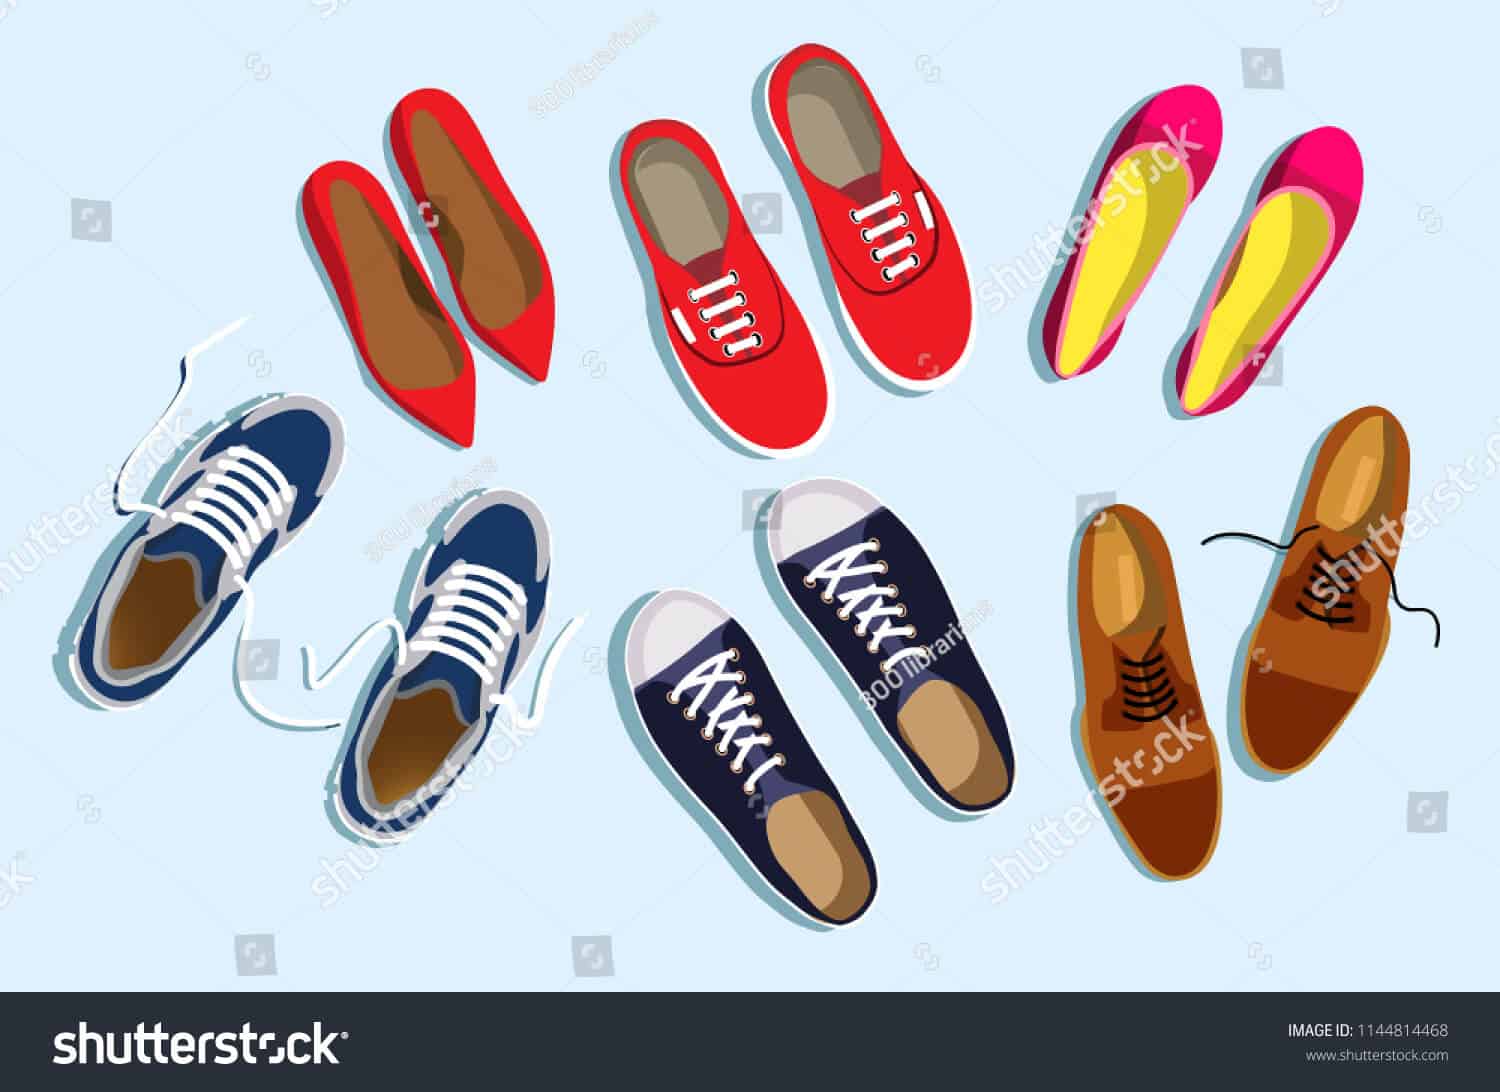 62 ngàn hình ảnh giày nam chất lượng cao trên Shutterstock